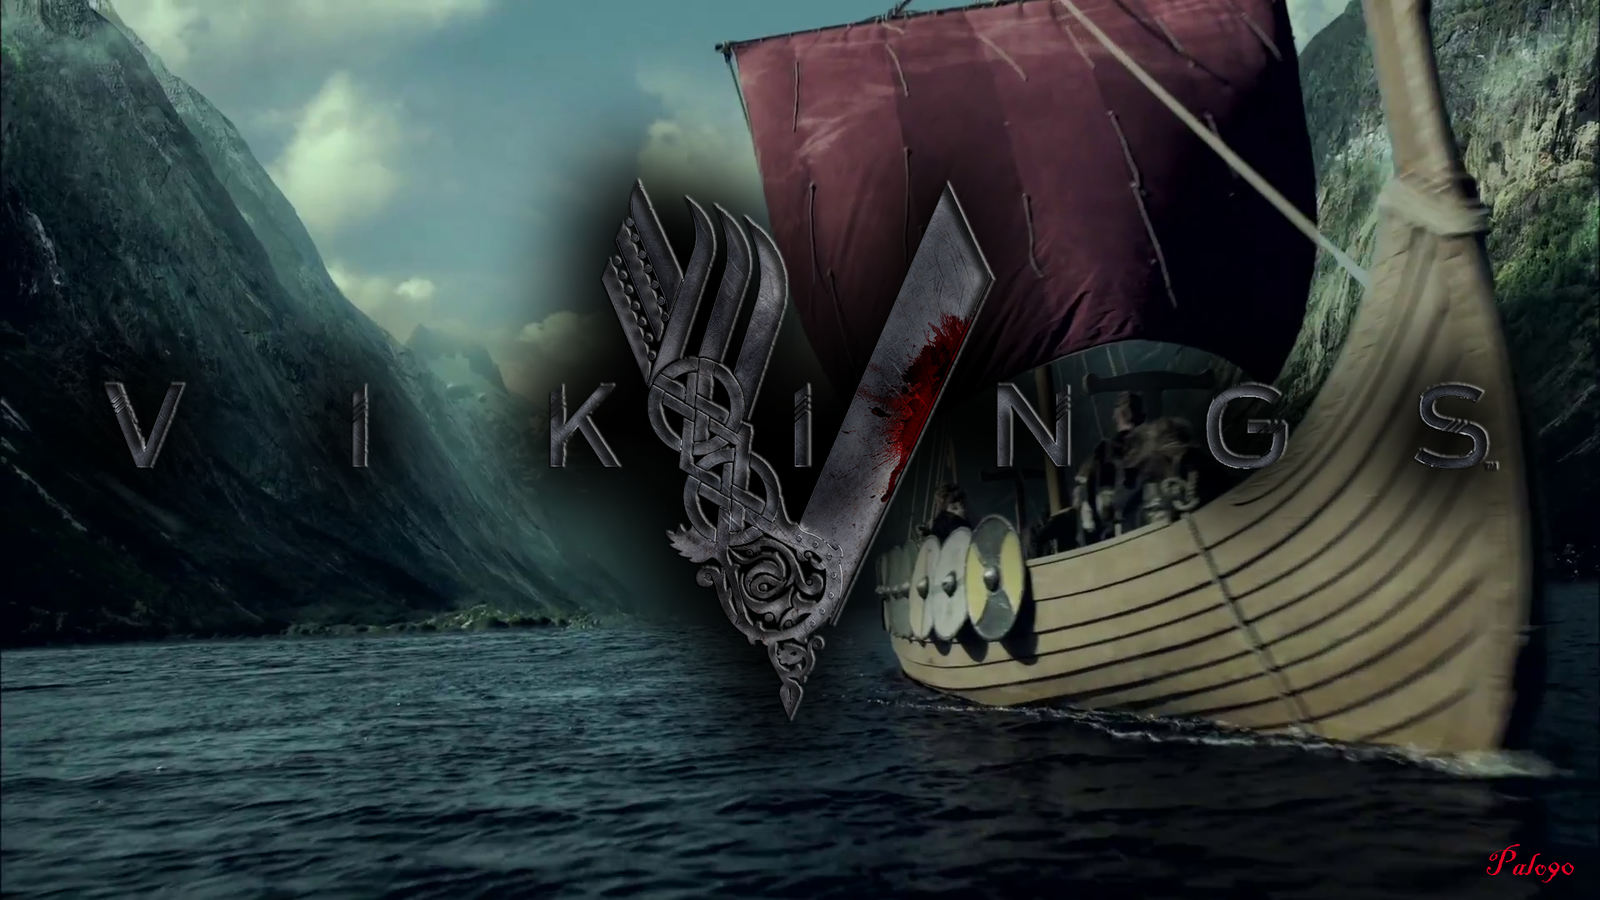 Vikings Wallpaper By Palo90 Fan Art Movies Tv